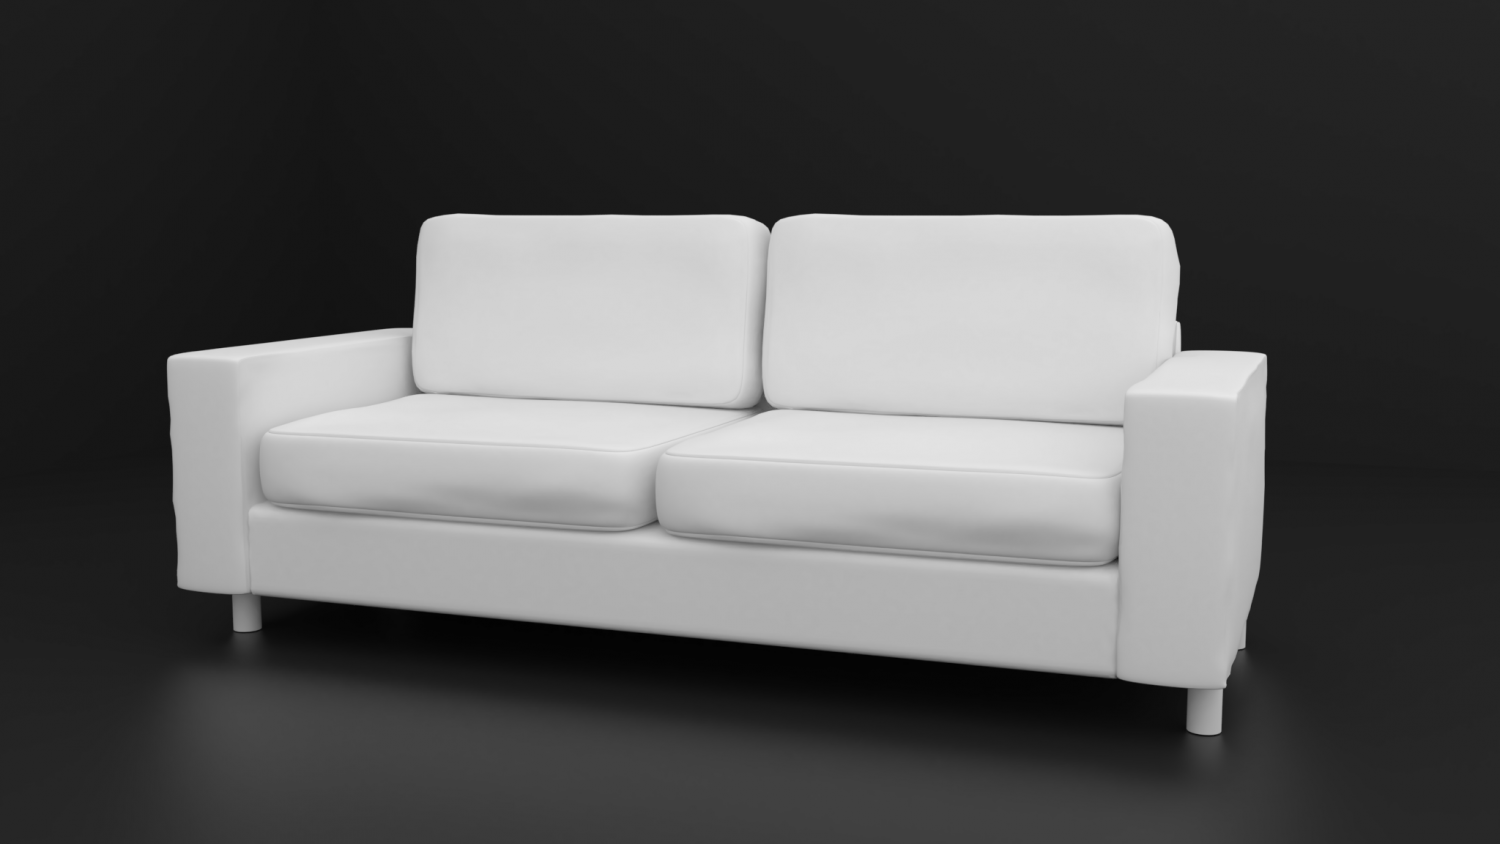 Sofa model 3ds Max